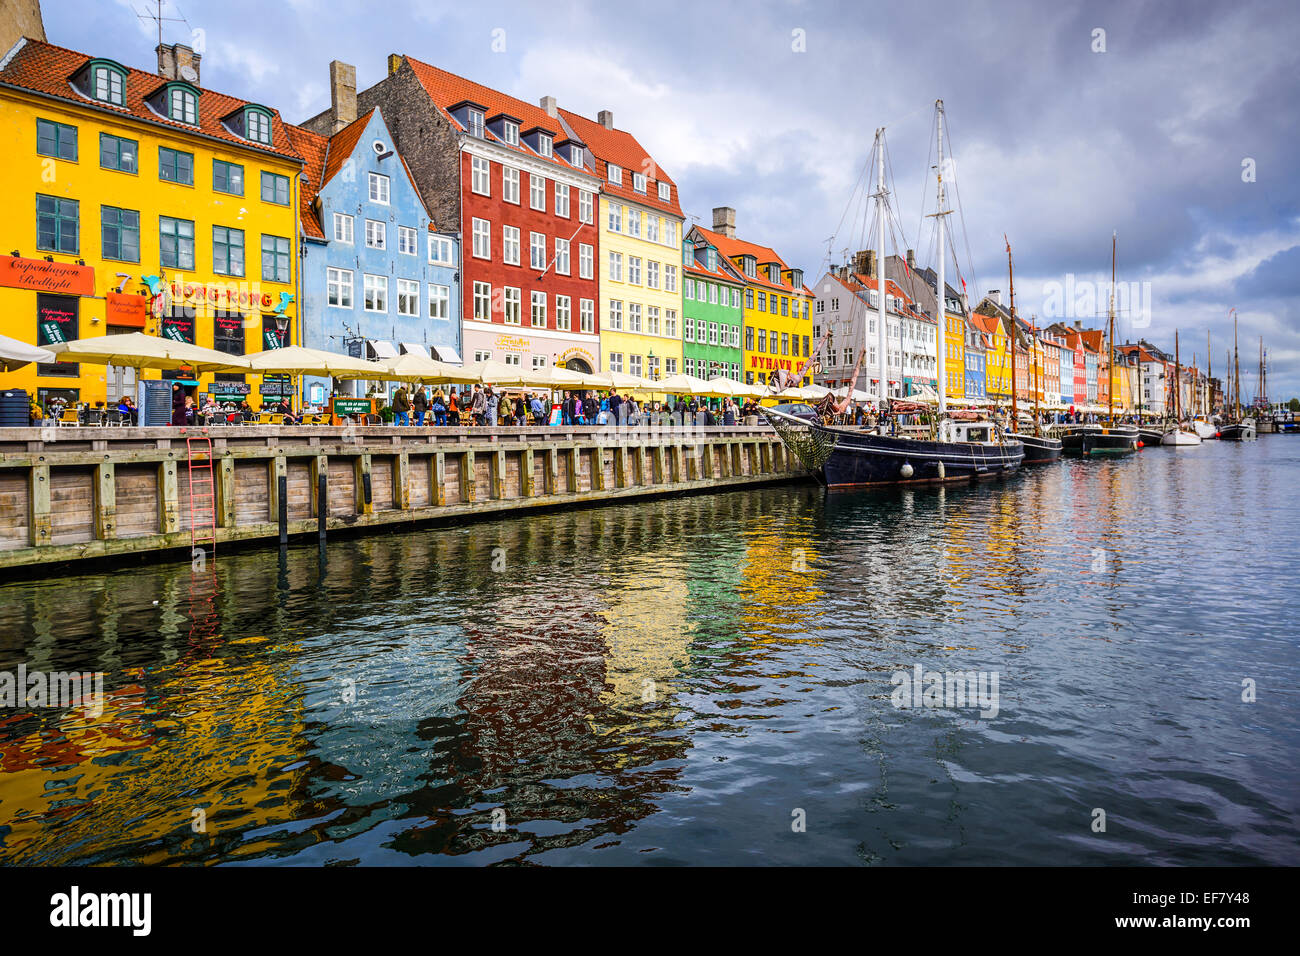 Uferpromenade von Nyhavn Kanal. Die Bar gesäumten Uferpromenade stammt aus dem 17. Jahrhundert. Stockfoto